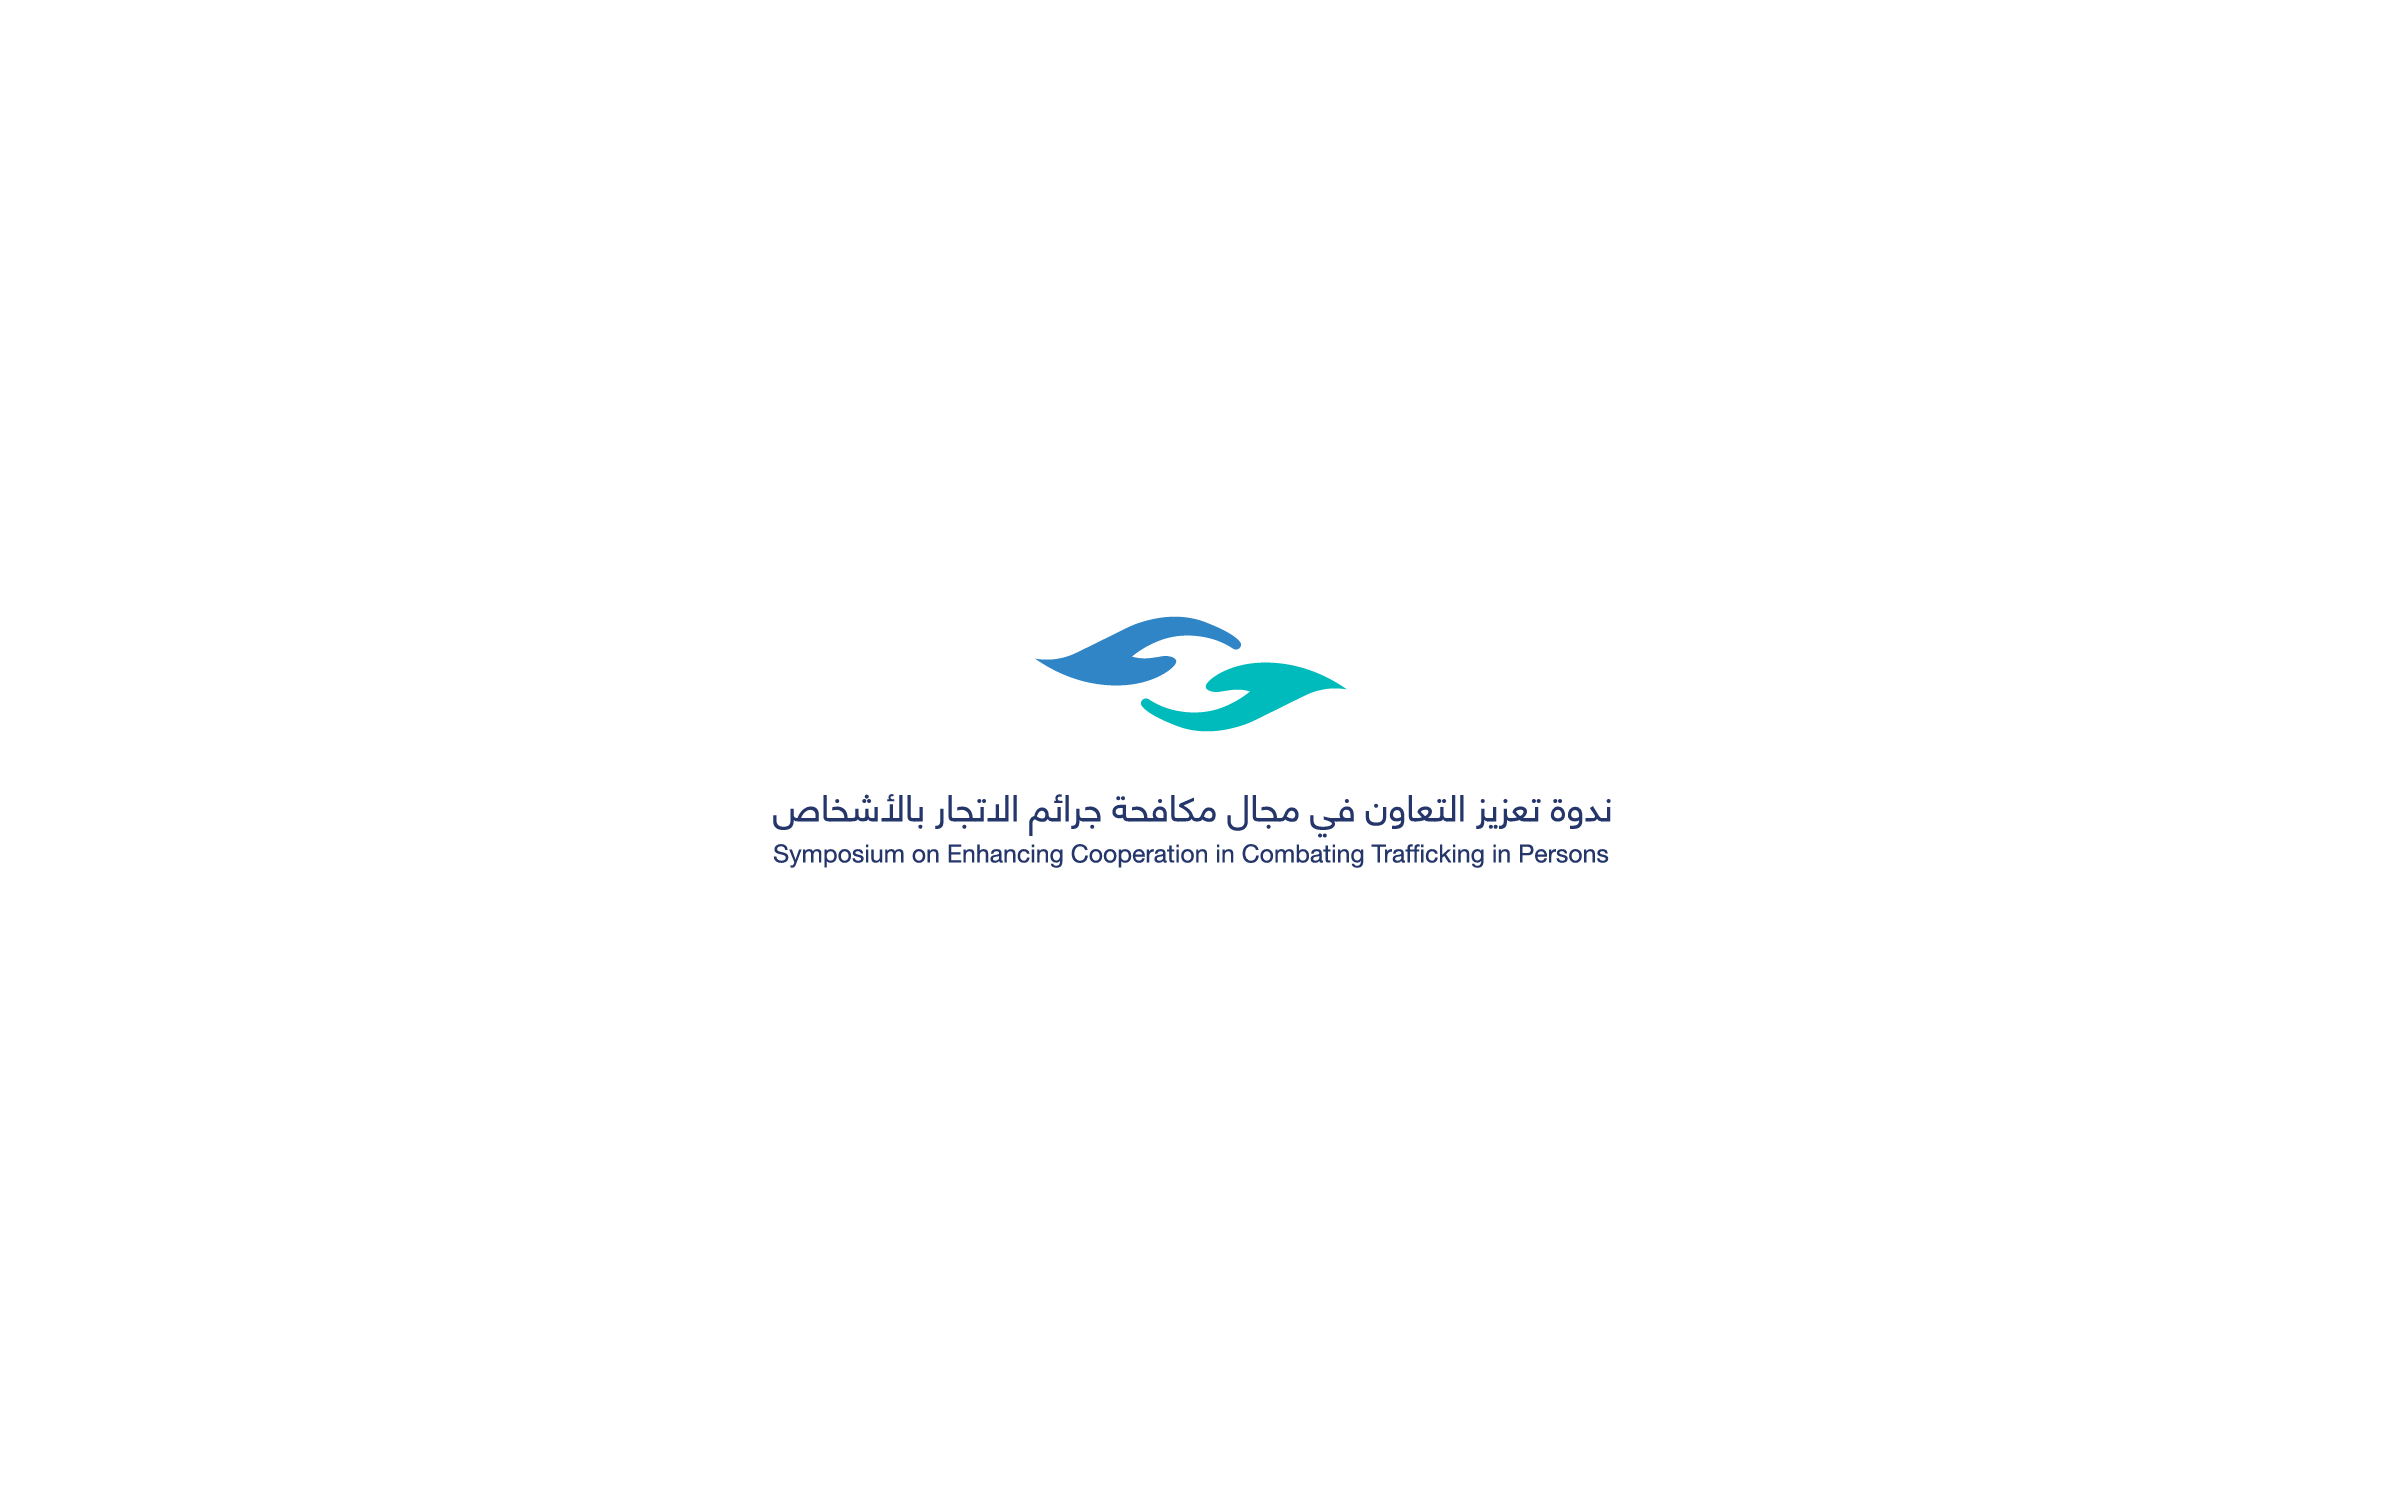 "هيئة حقوق الإنسان" تنظم ندوة "تعزيز التعاون في مجال مكافحة جرائم الاتجار بالأشخاص" بمشاركة محلية ودولية واسعة في العاصمة الرياض